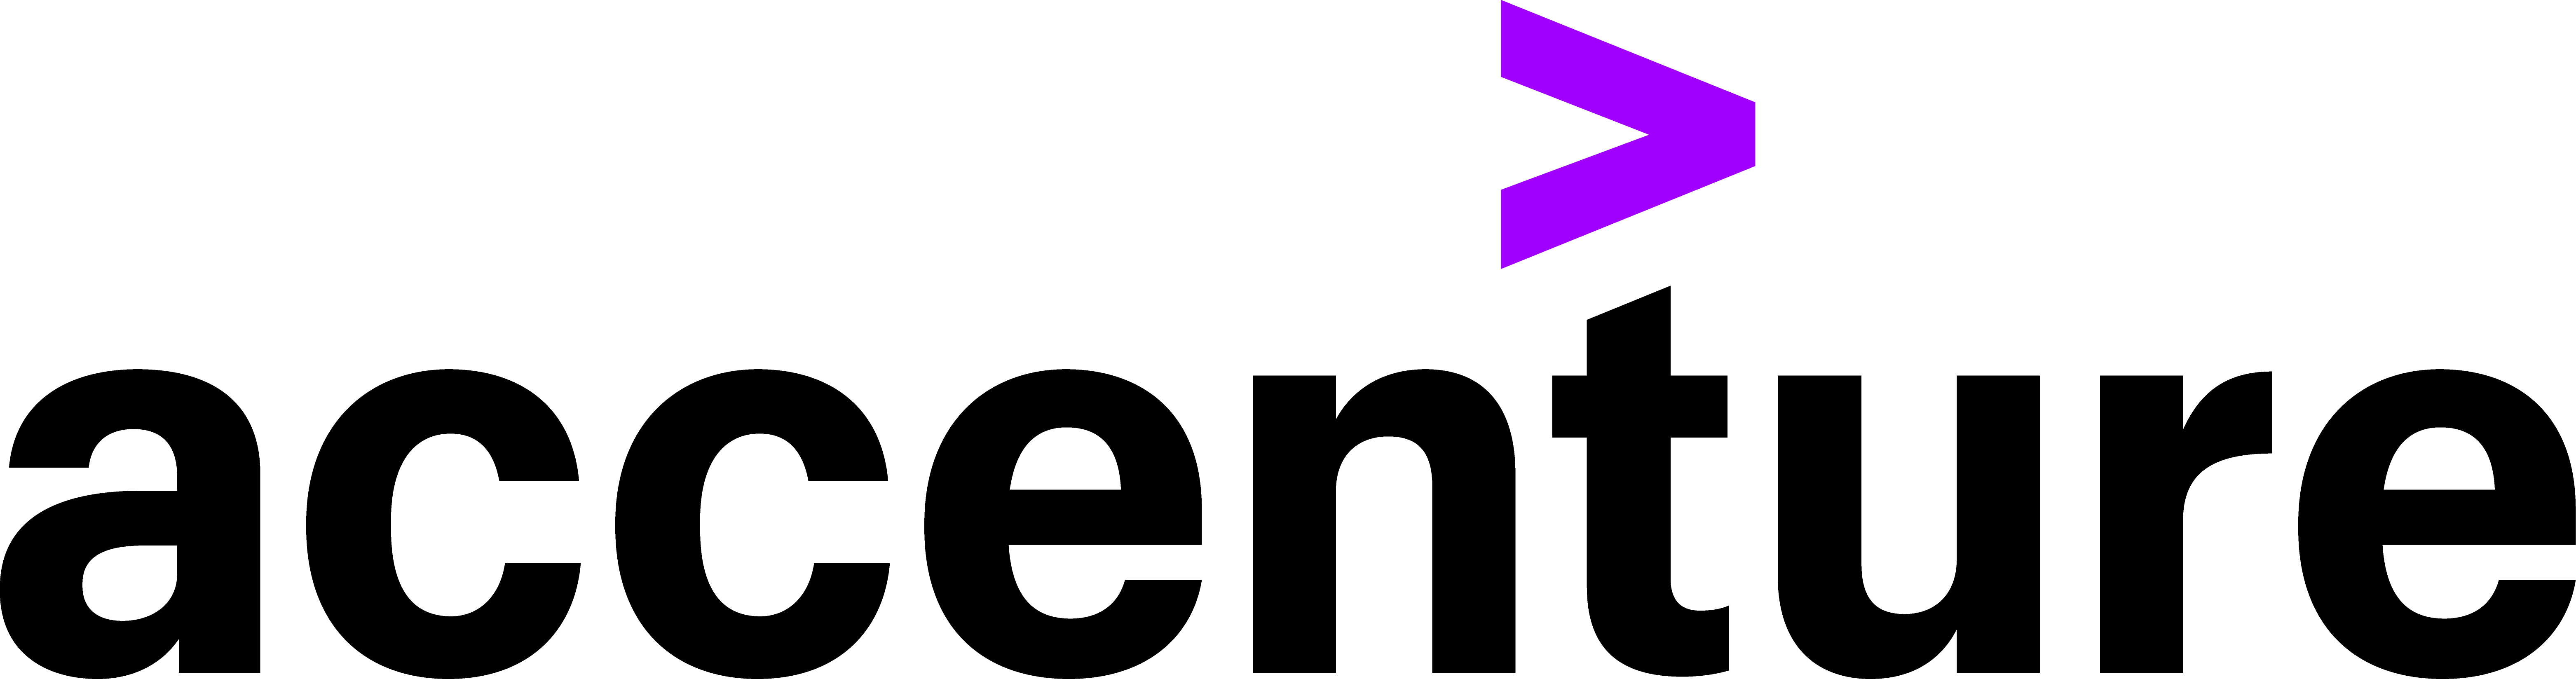 logotyp firmy Accenture